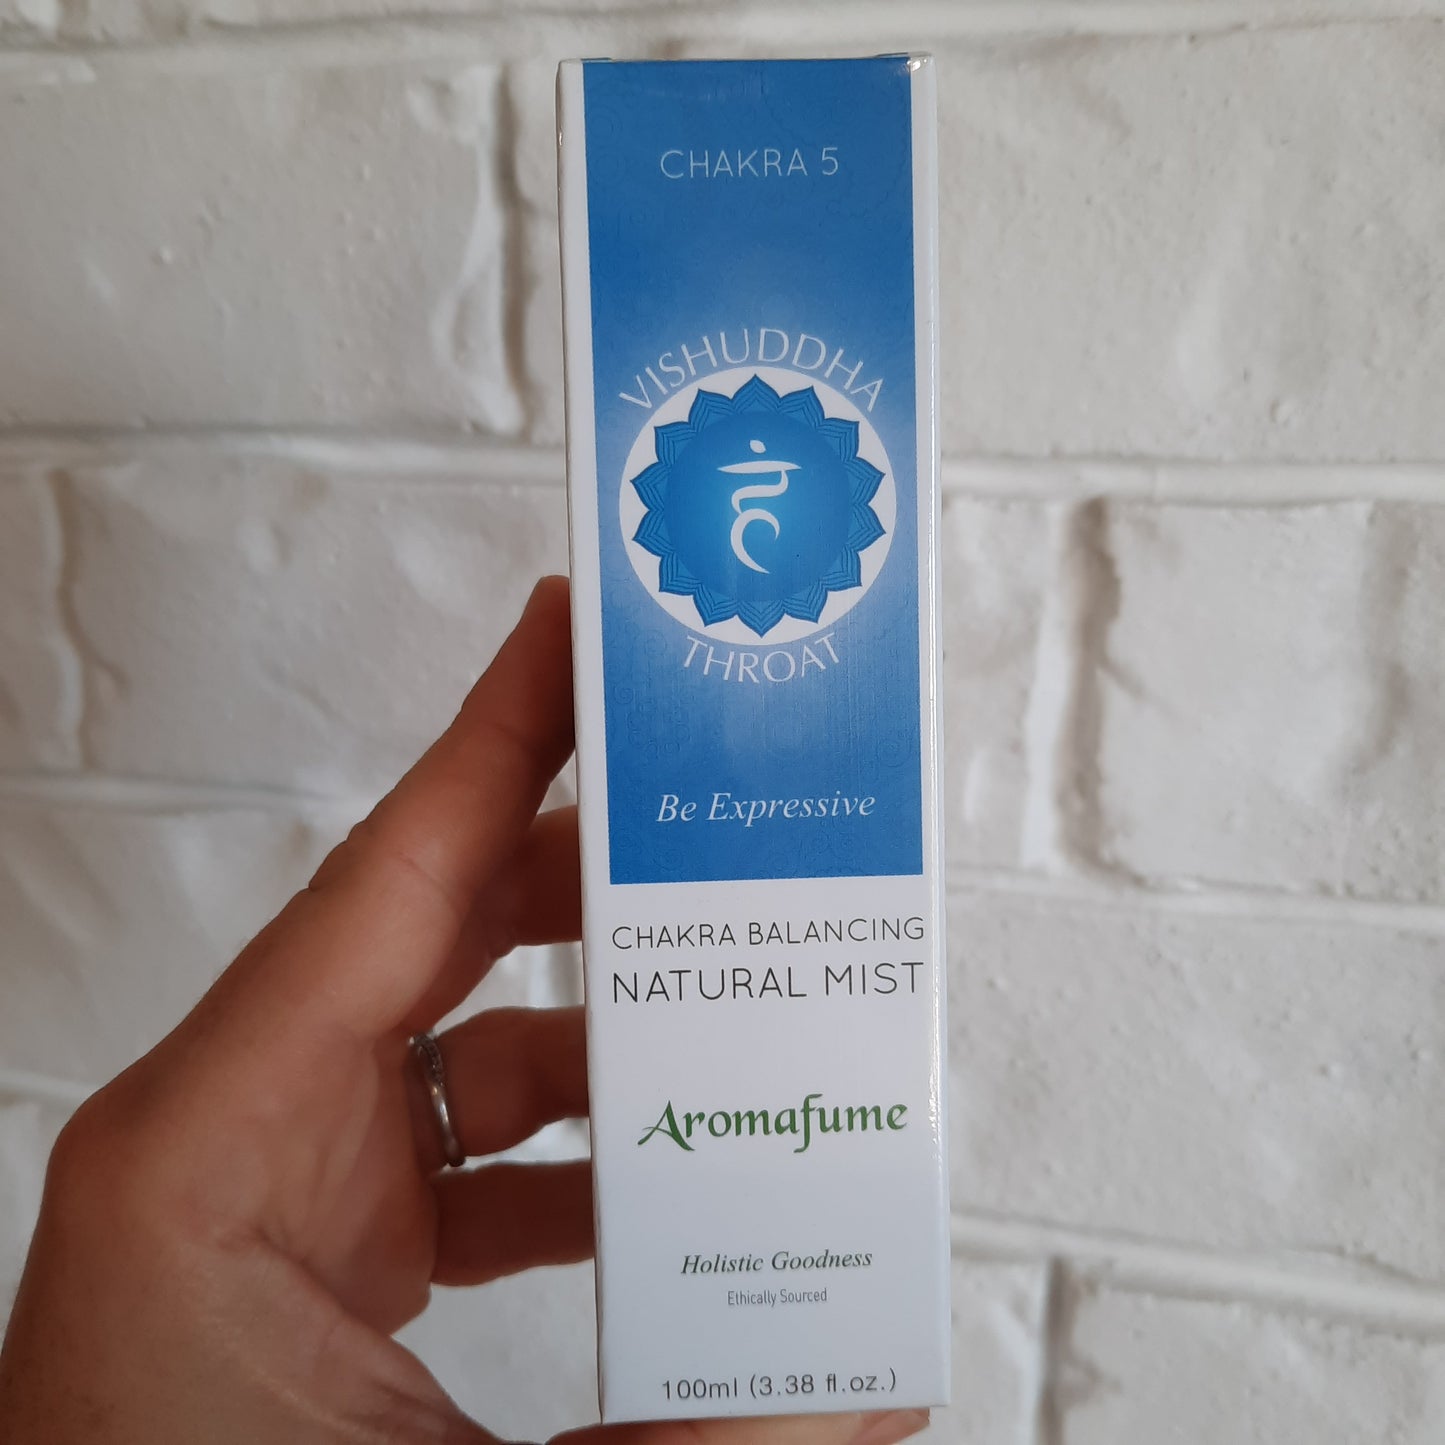 Aromafume Chakra Balancing Mist - Vishuddha Throat